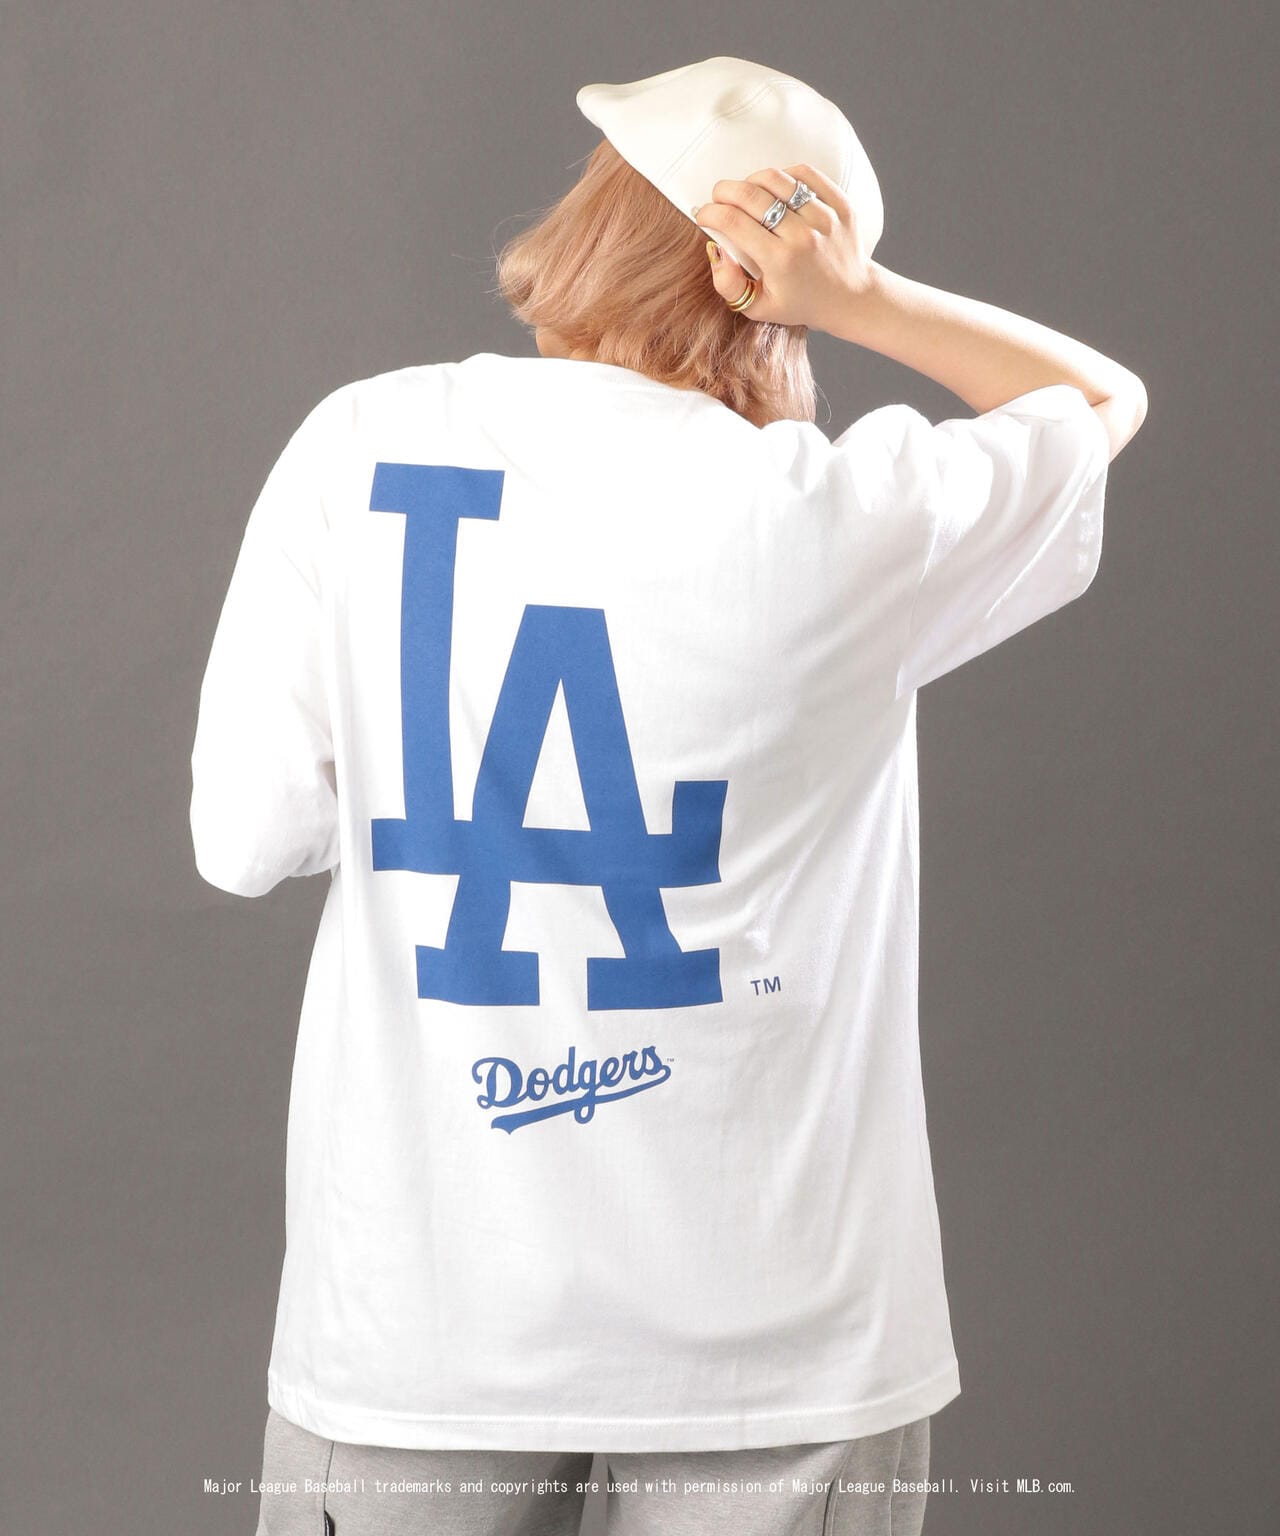 ドジャース ロングTシャツ MLB公式グッズ公式グッズ - Tシャツ 